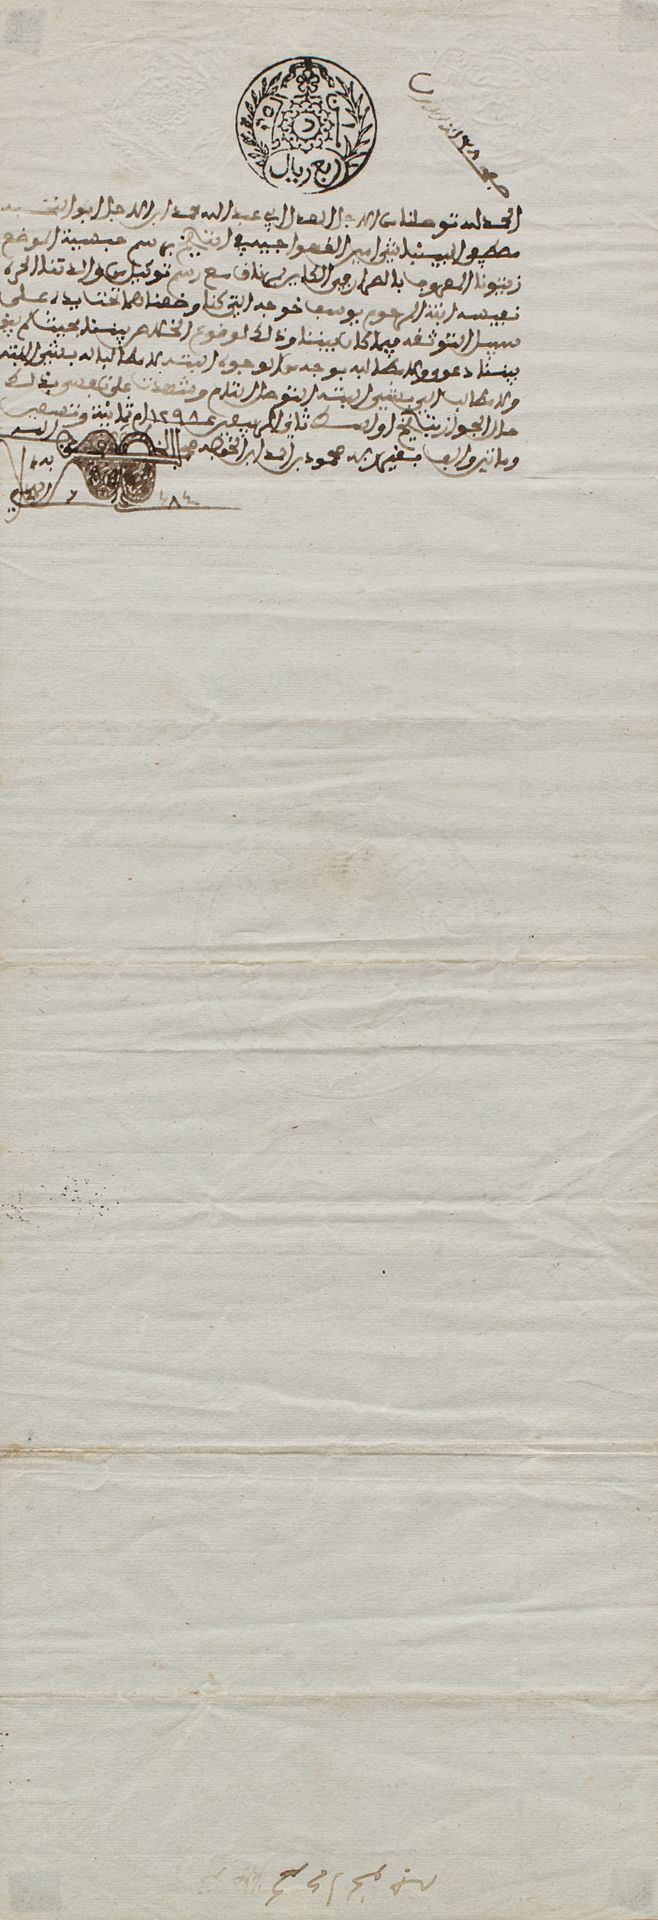 Contrat de vente Tunesien, Ende des 19. Jahrhunderts

Arabische Handschrift auf &hellip;